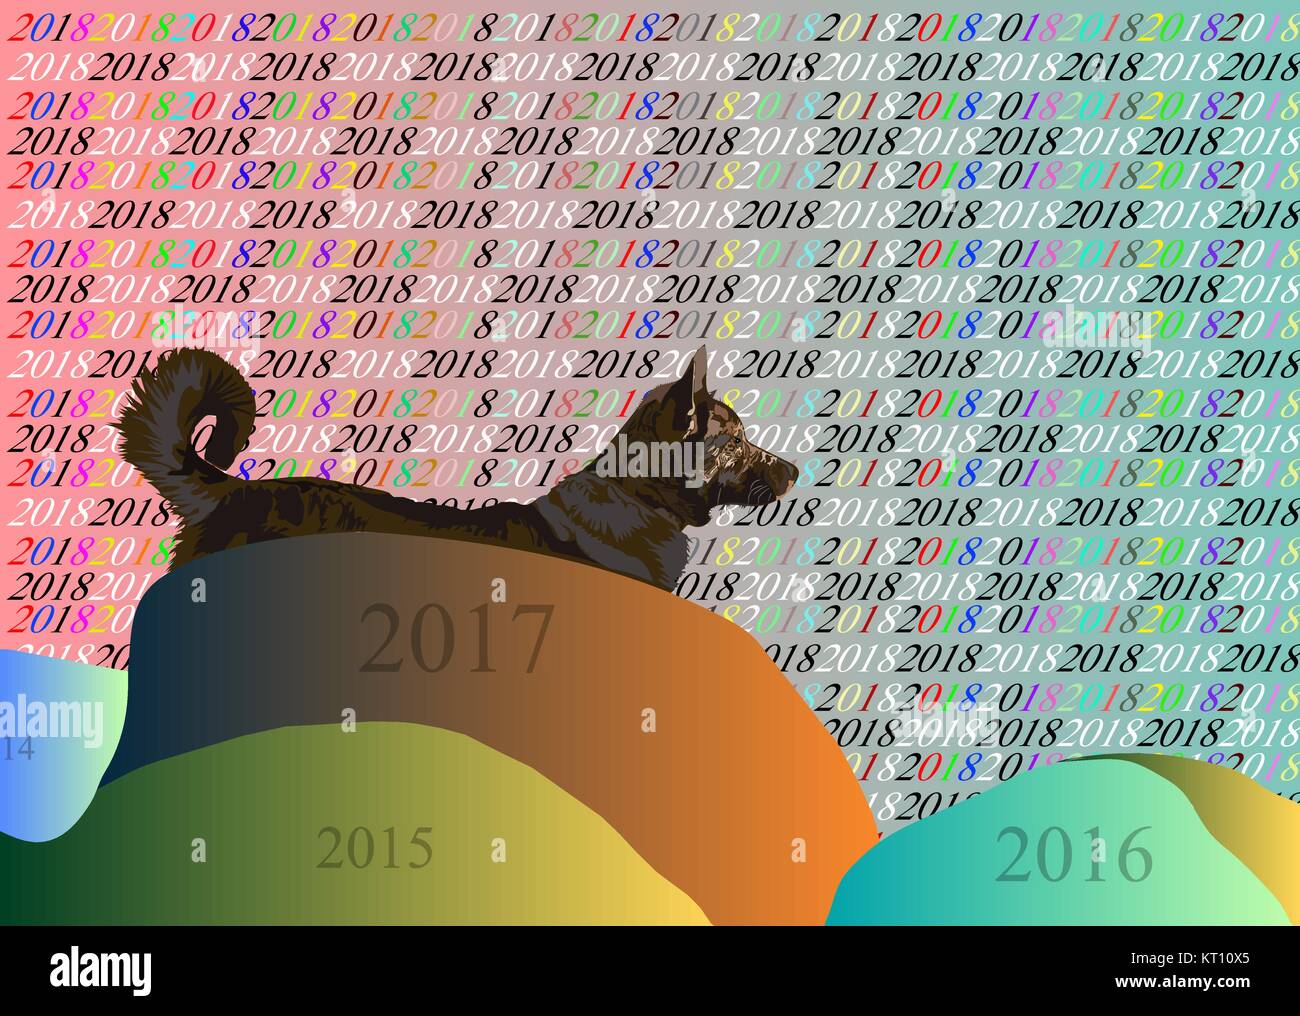 Cane digitale del 2018 Illustrazione Vettoriale